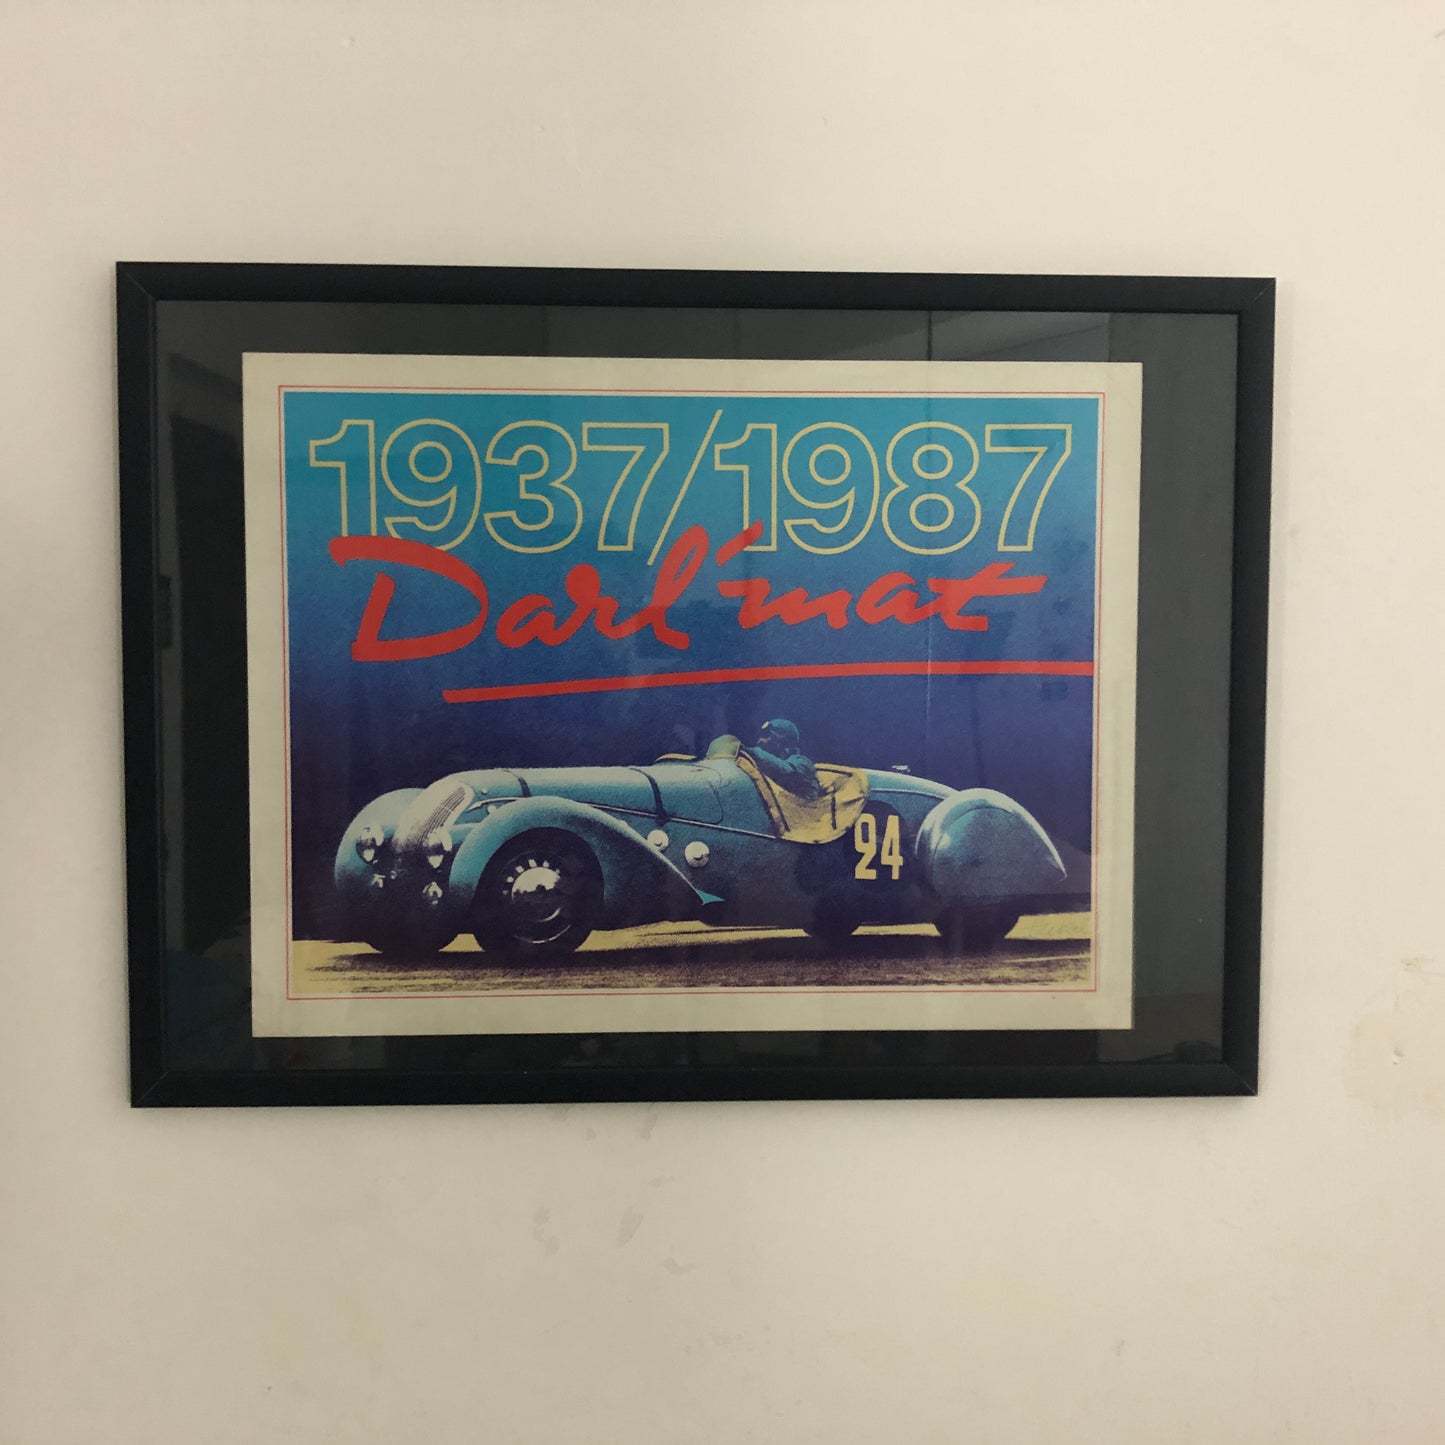 Peugeot Poster 1937/1987 Darl'mat